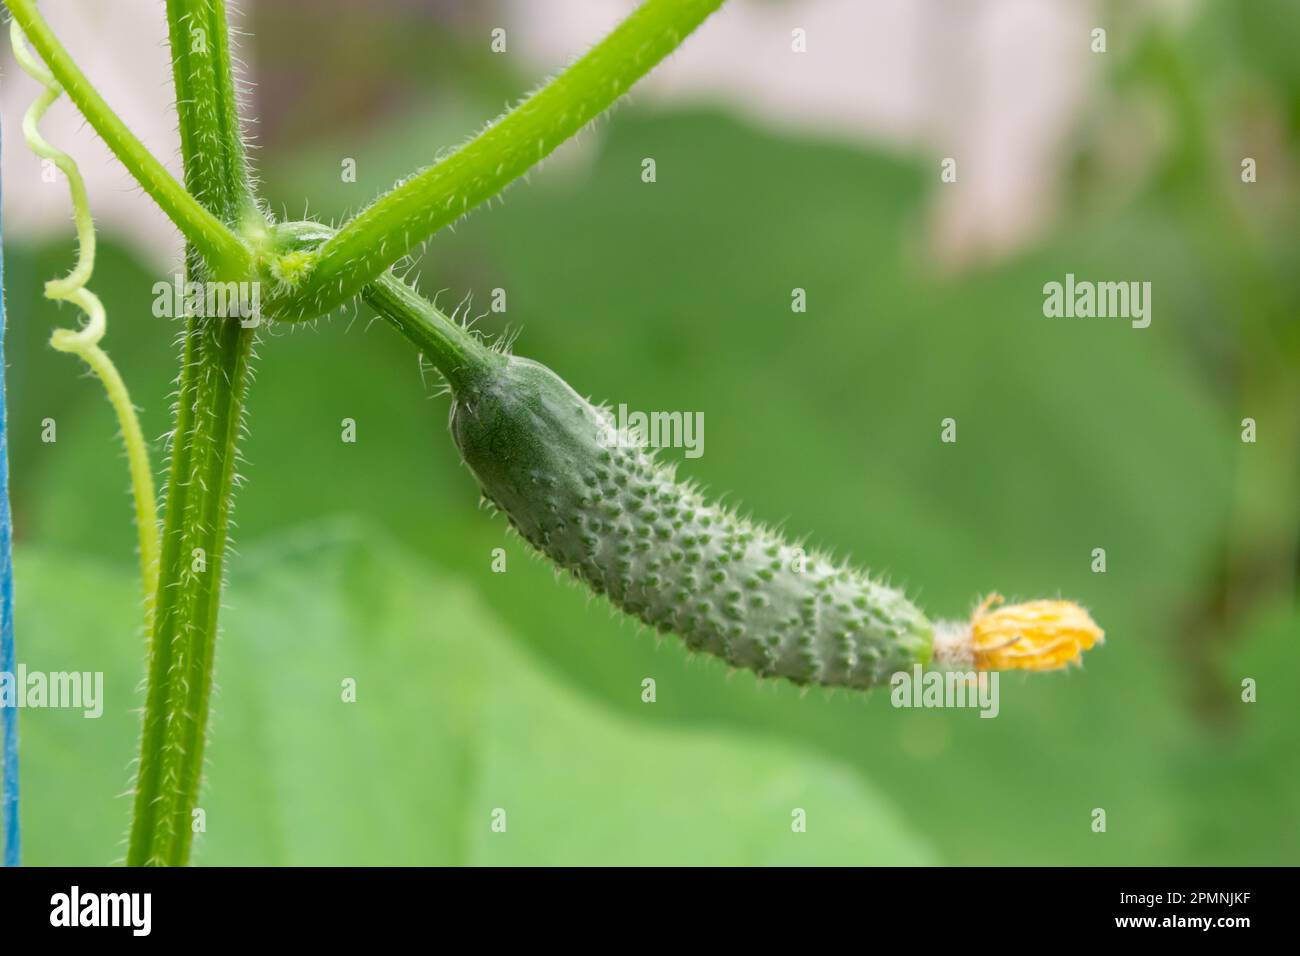 Junge grüne Gurken Gemüse hängt an Lianen von Gurkenpflanzen im grünen Haus. Stockfoto